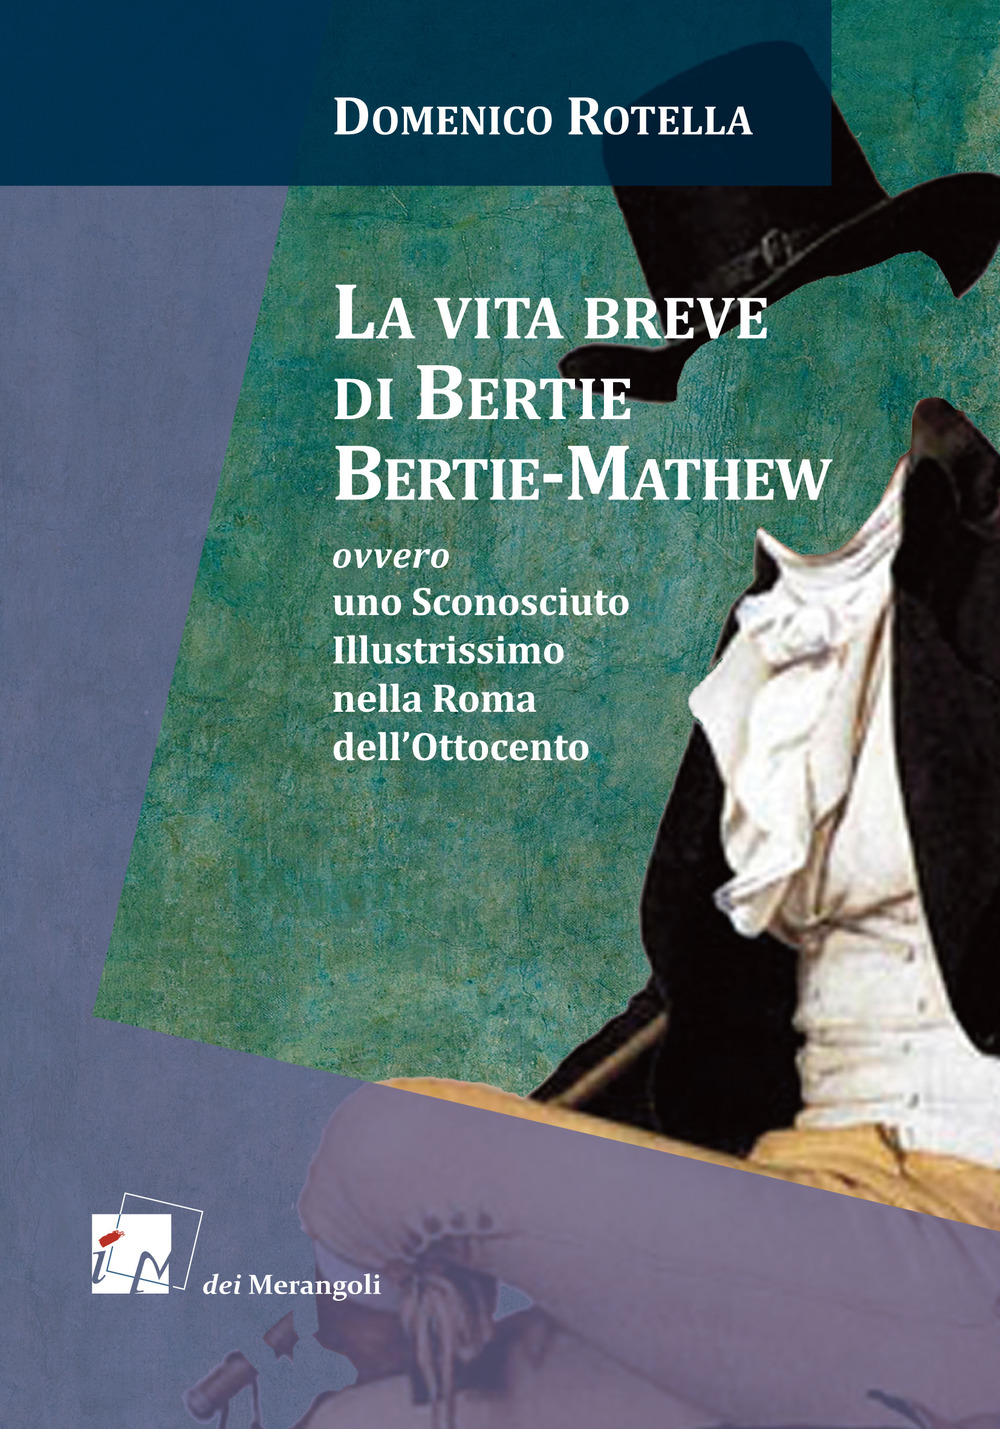 Image of La vita breve di Bertie Bertie-Mathew ovvero uno Sconosciuto Illustrissimo nella Roma dell'Ottocento